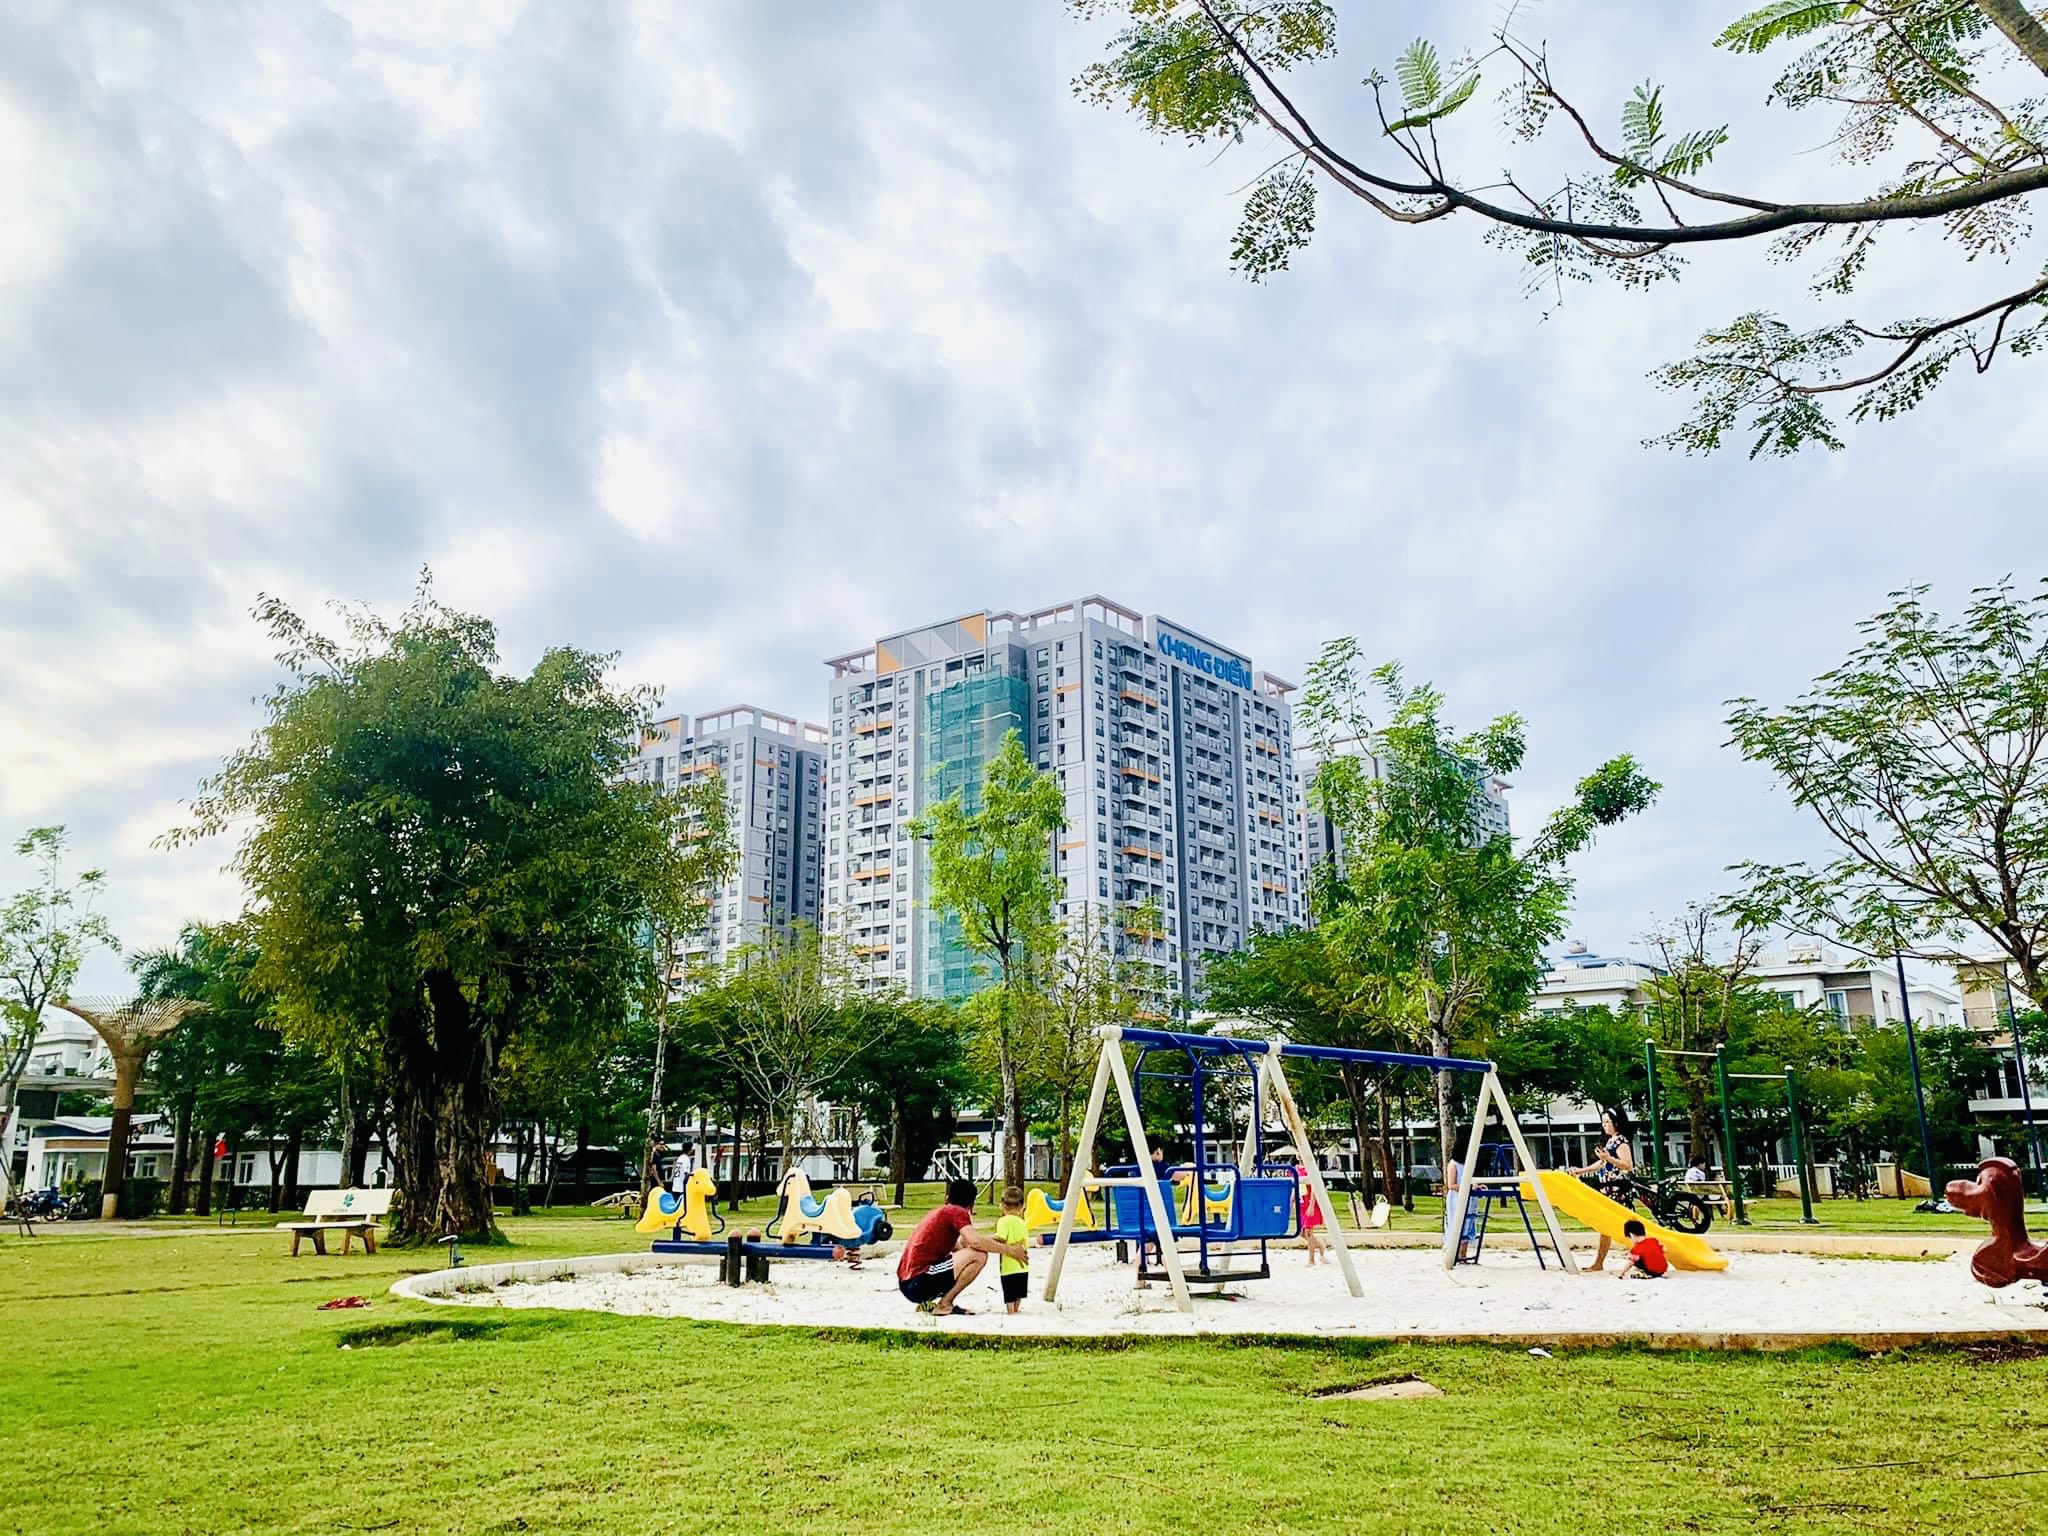 Tiến độ cập nhât mới nhất dự án Lovera Vista Khang Điền. Khung cảnh khu vui chơi trẻ em giữ lòng công viên xanh